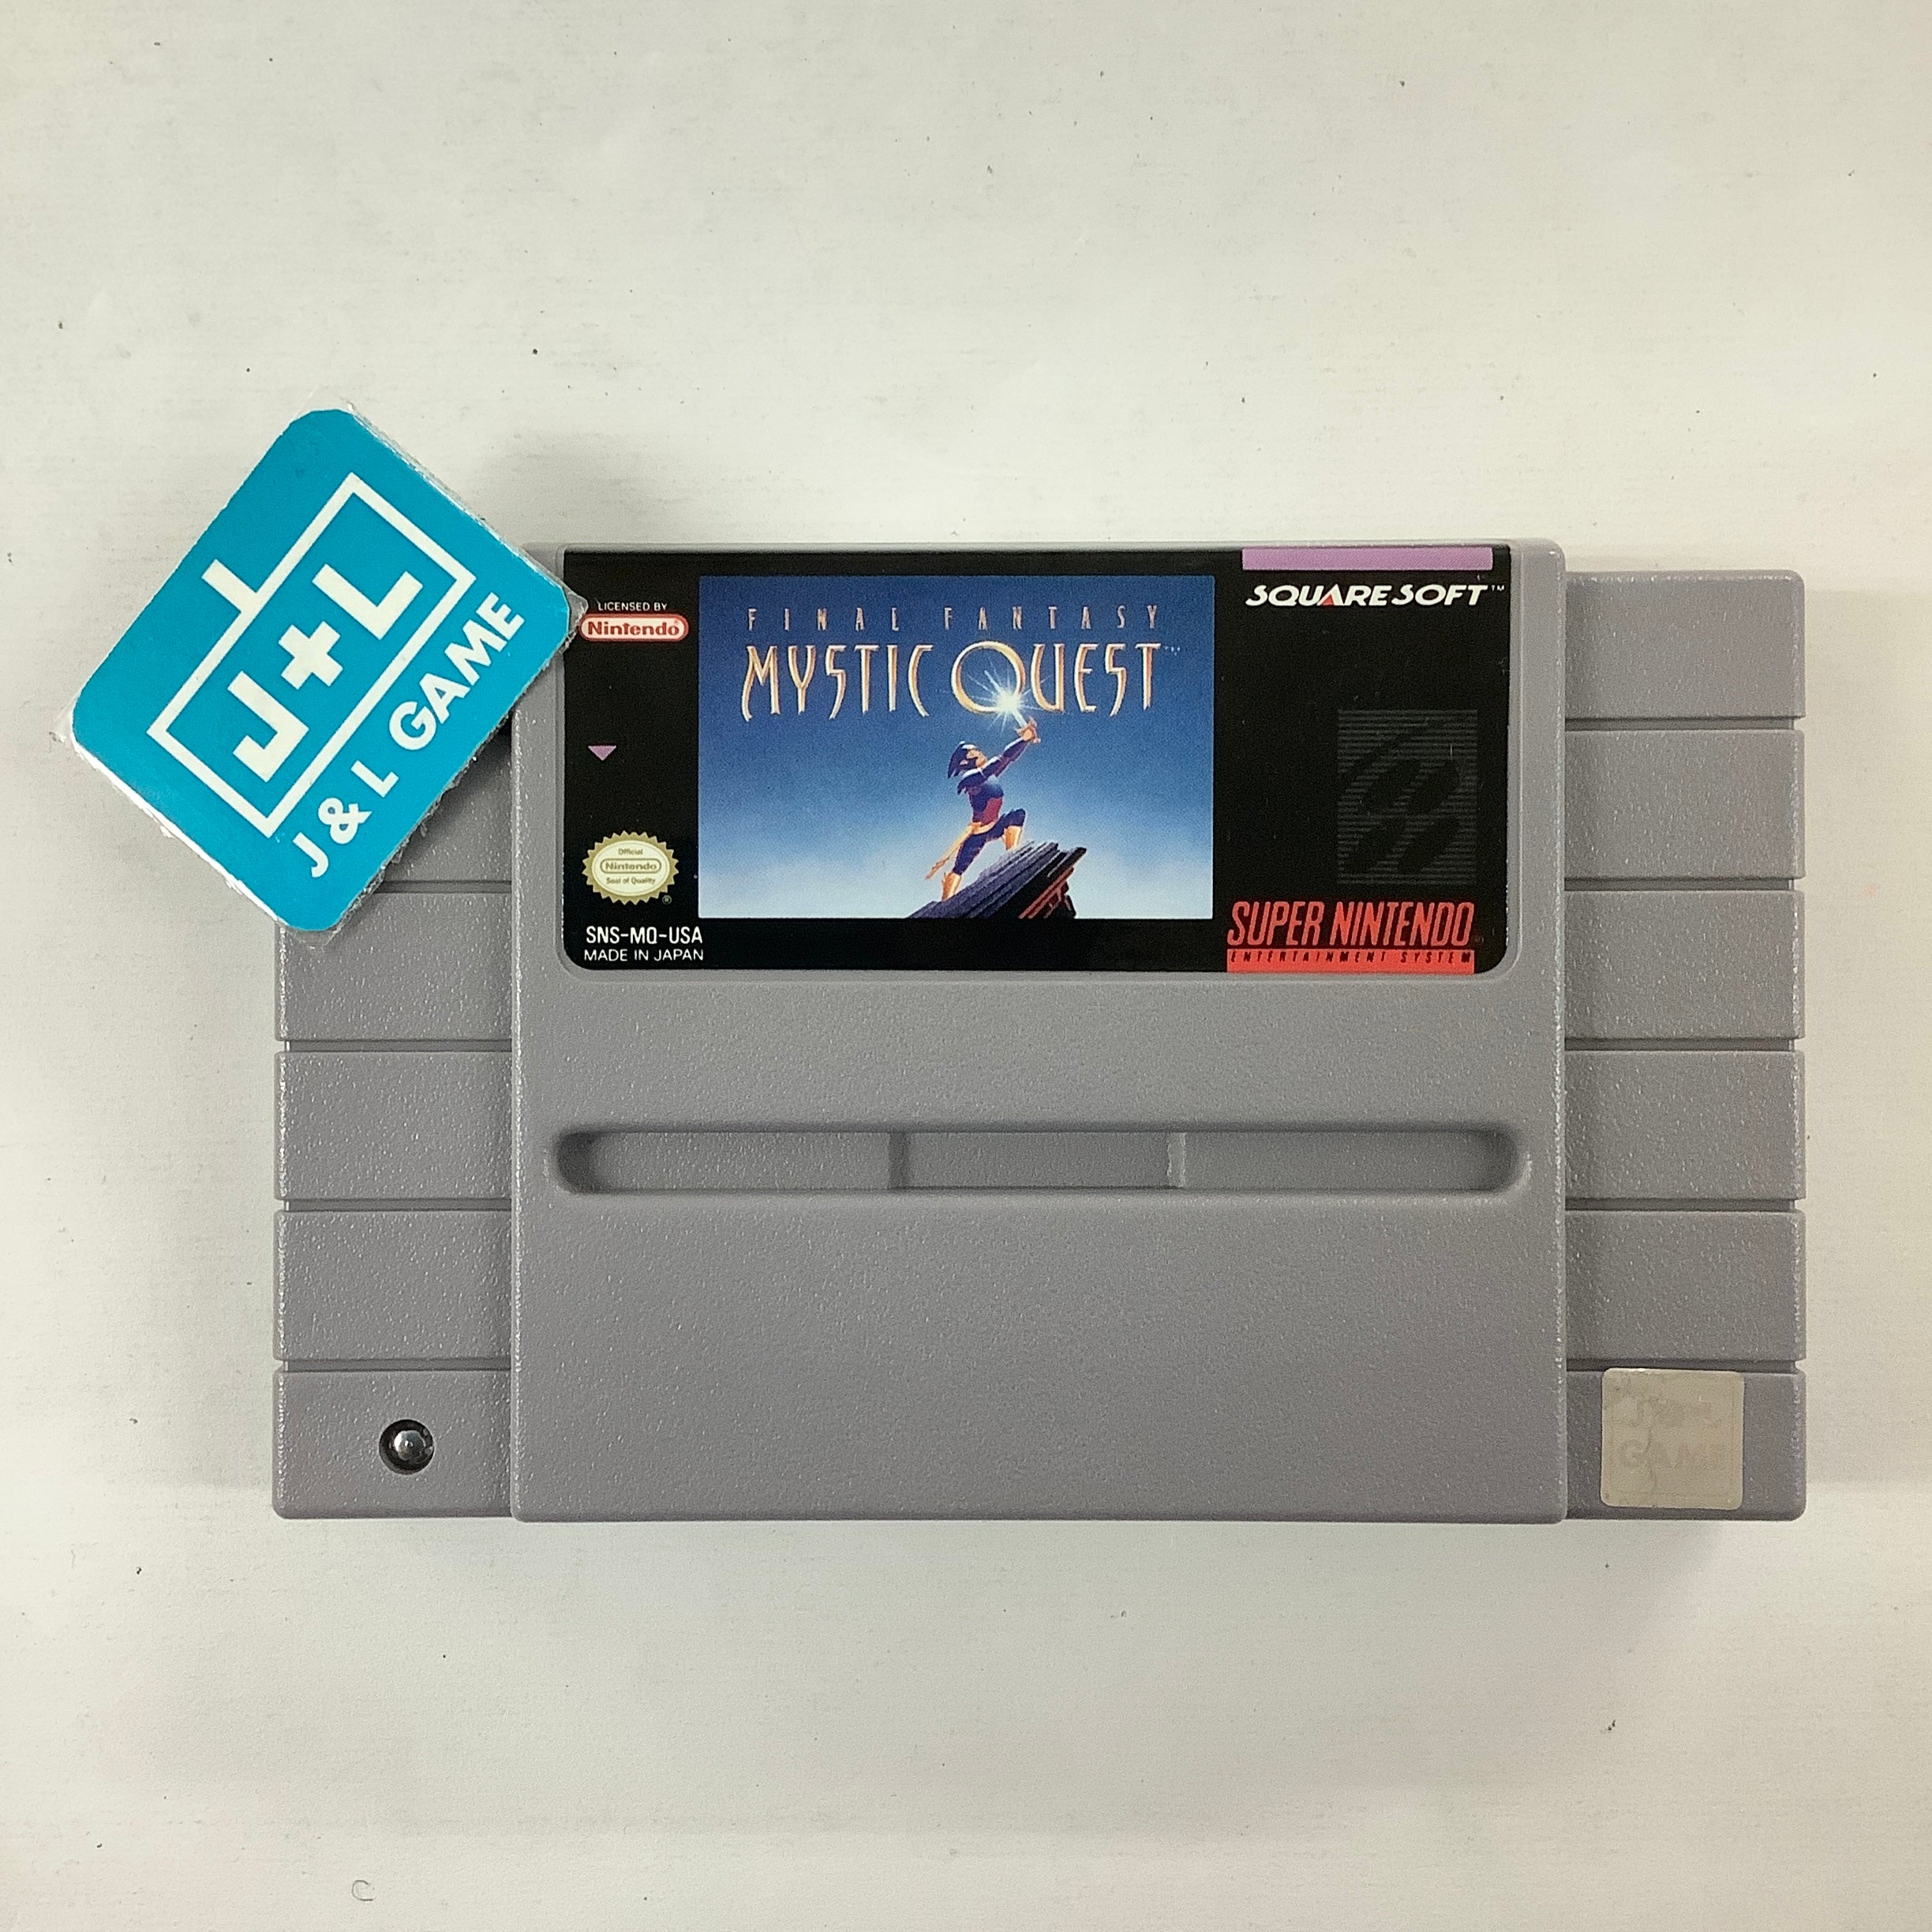 Final Fantasy: Mystic Quest - (SNES) Super Nintendo [Pre-Owned]